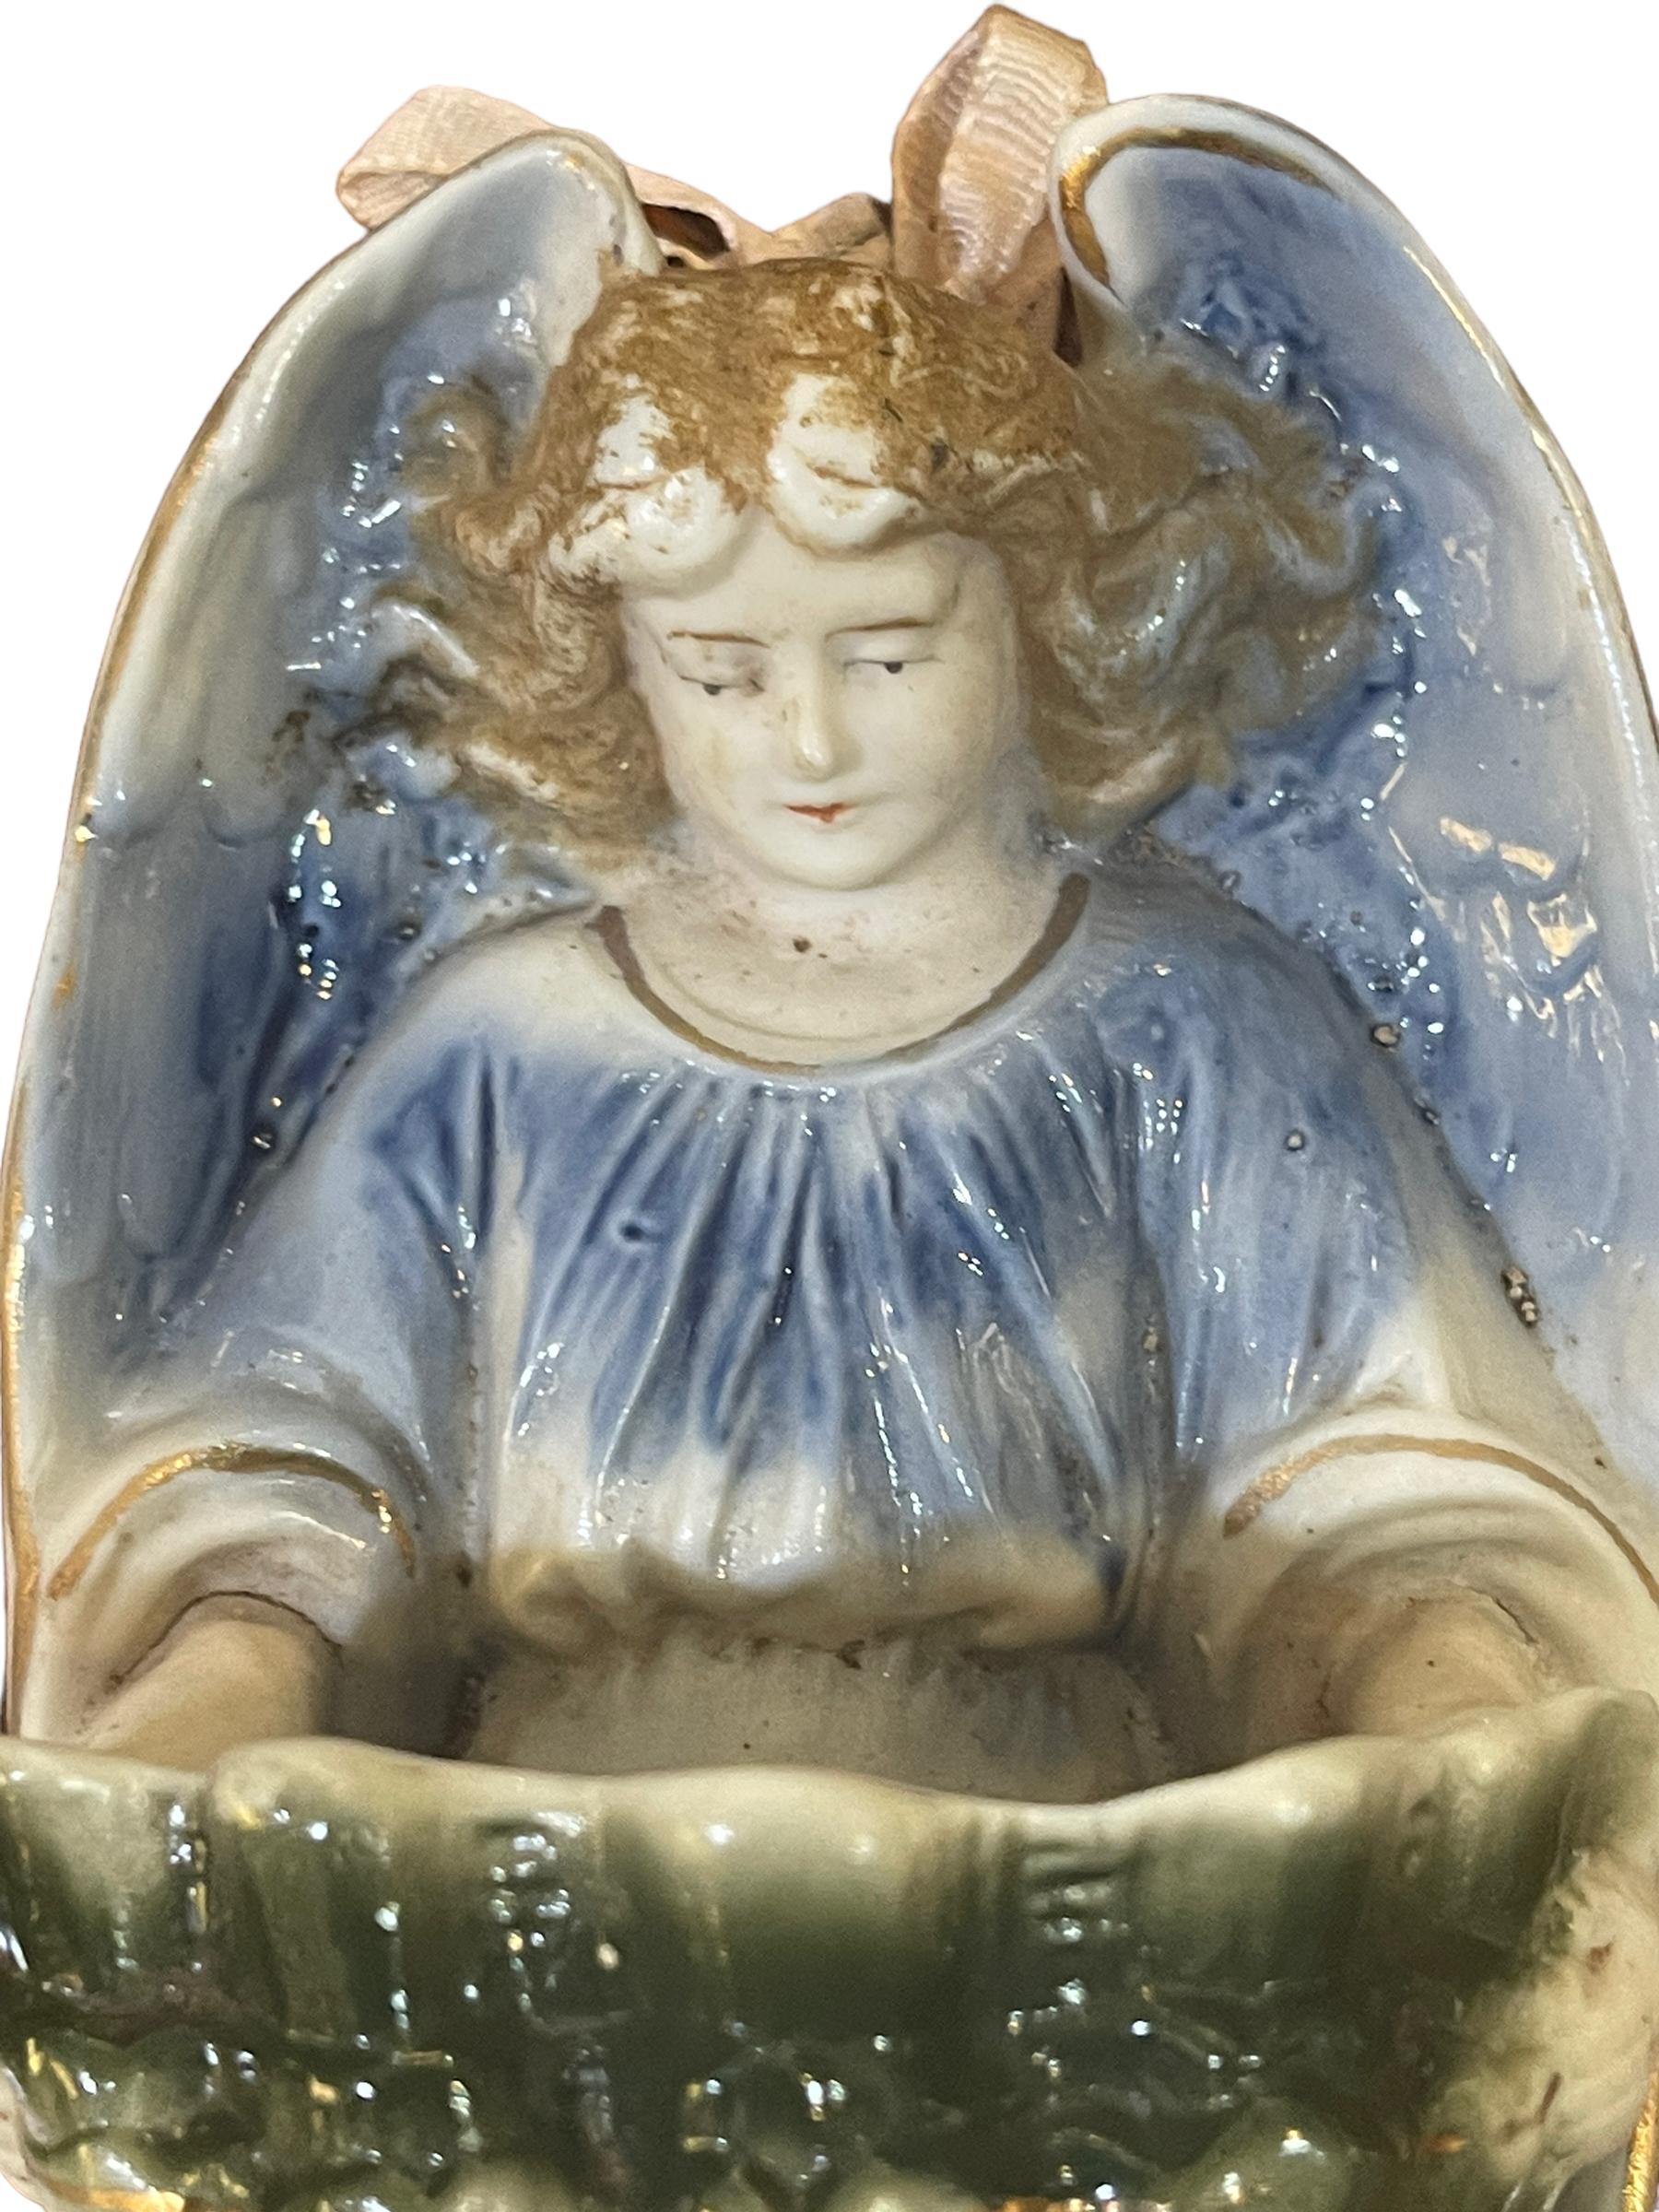 Bénitier en céramique, 20e siècle
Soufflet datant du milieu du 20ème siècle, vintage, peint à la main, objet de fabrication italienne.
Bon état comme sur la photo